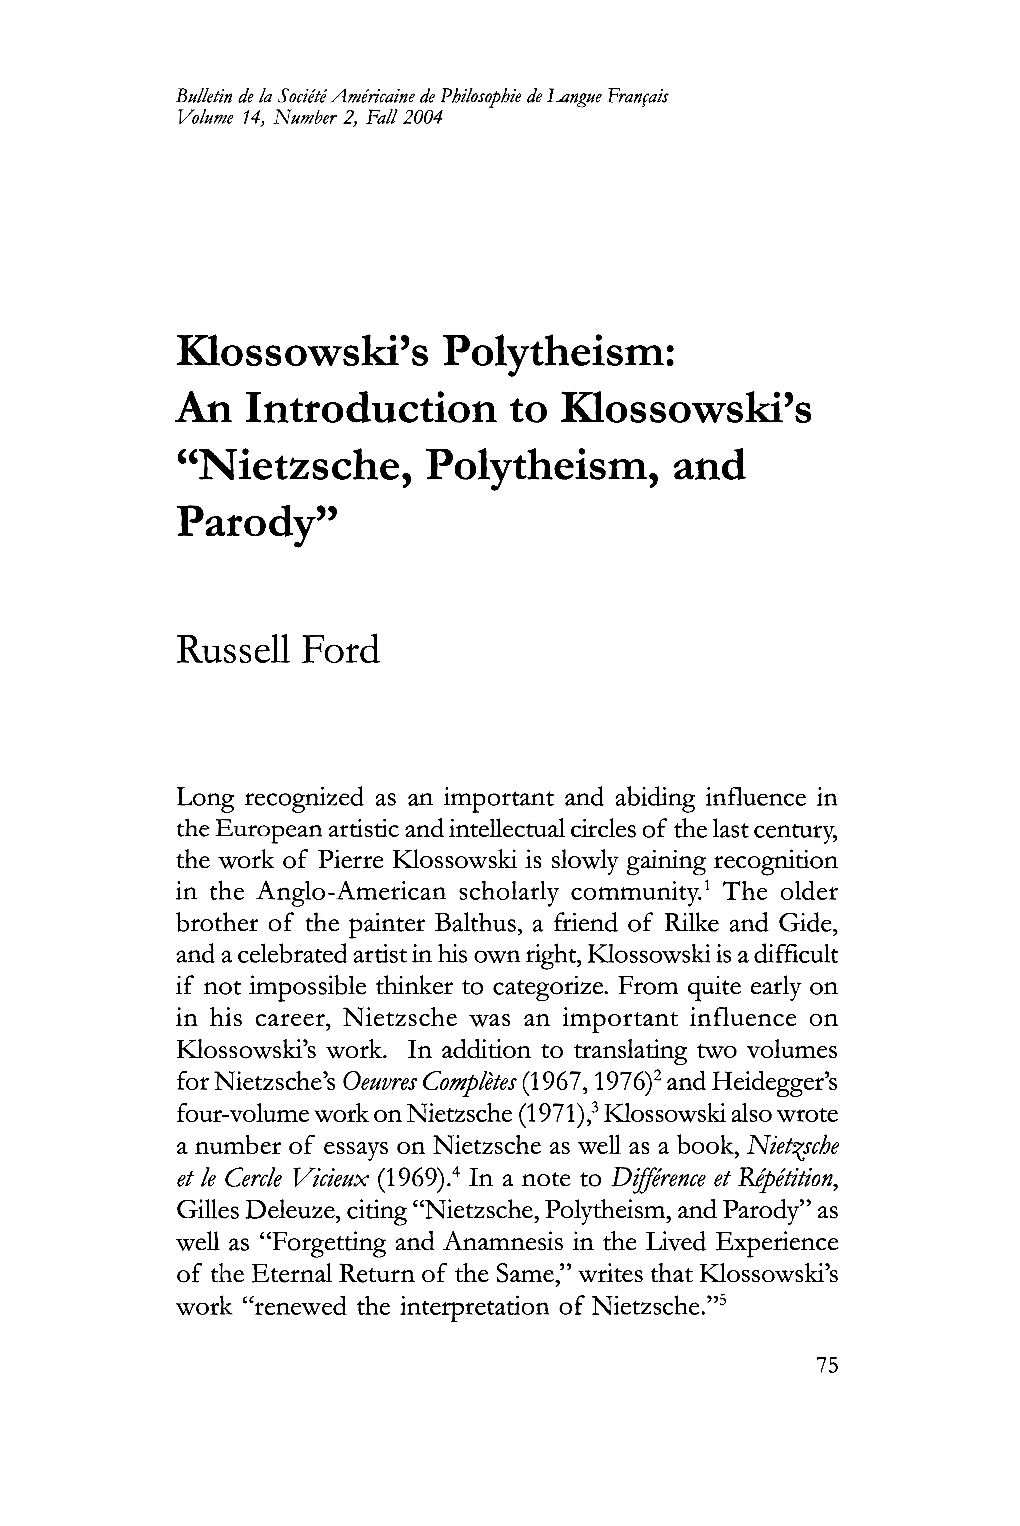 Klossowski's Polytheism: "Nietzsehe, Polytheism, and Parody"